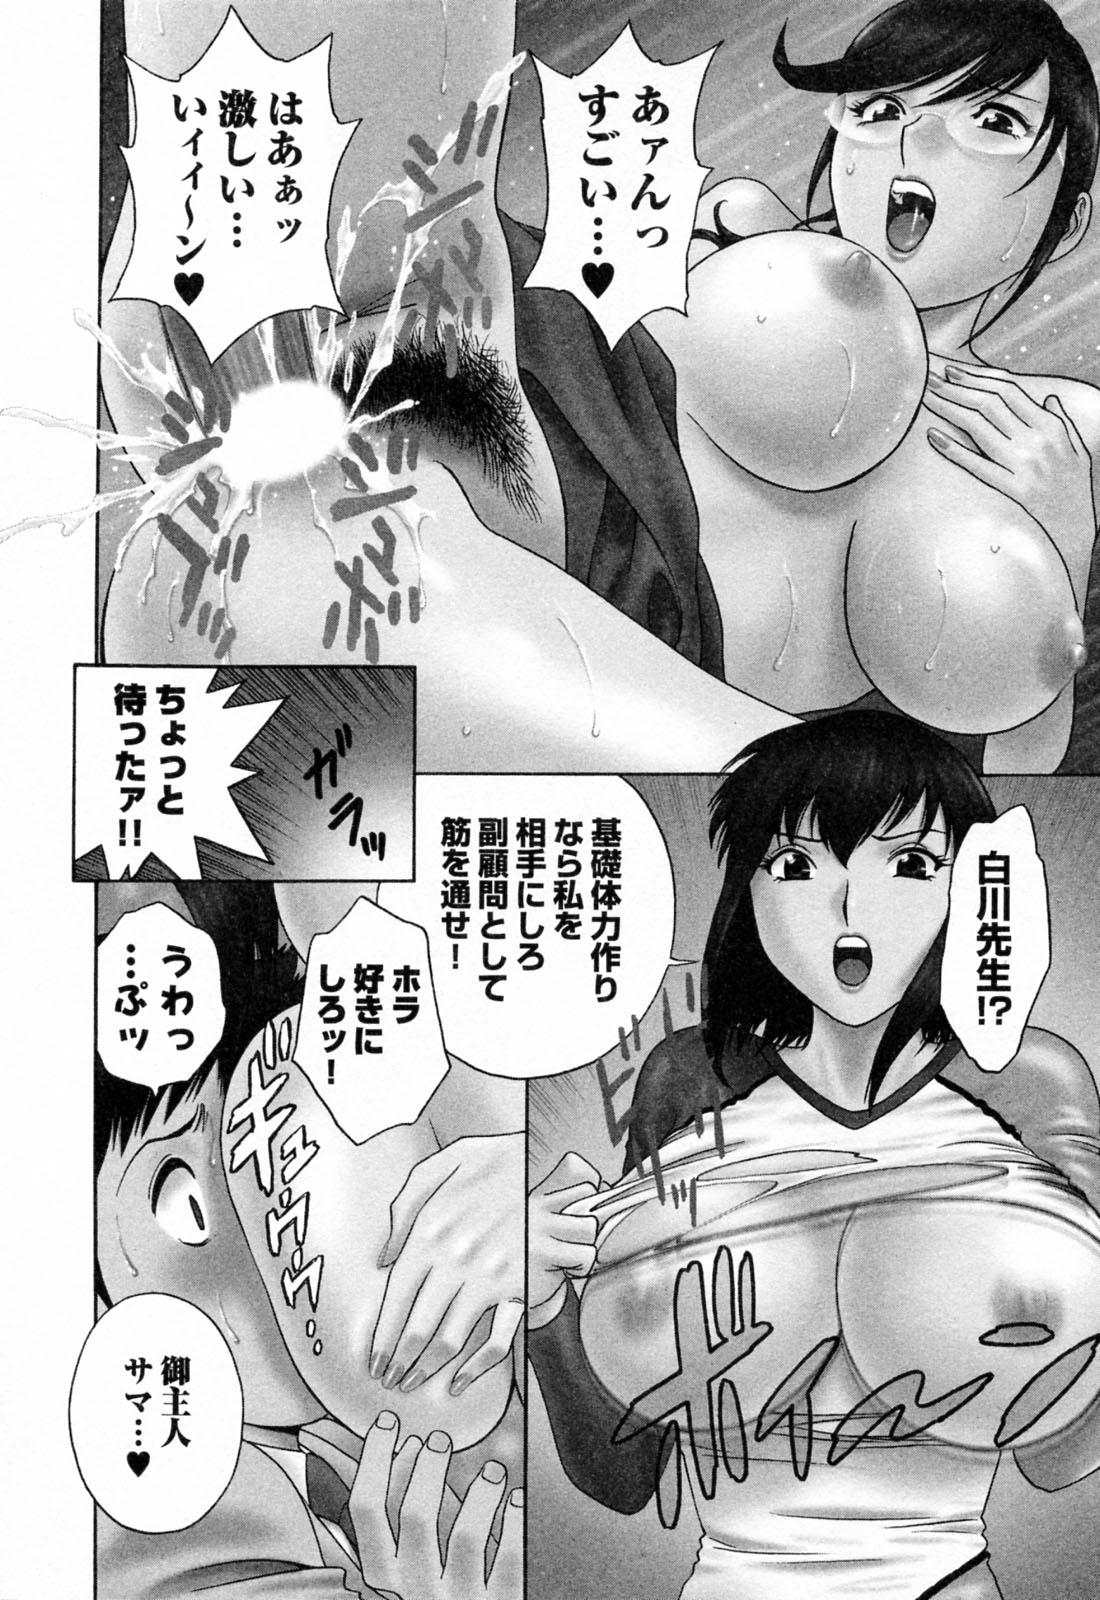 [Hidemaru] Mo-Retsu! Boin Sensei (Boing Boing Teacher) Vol.4 31